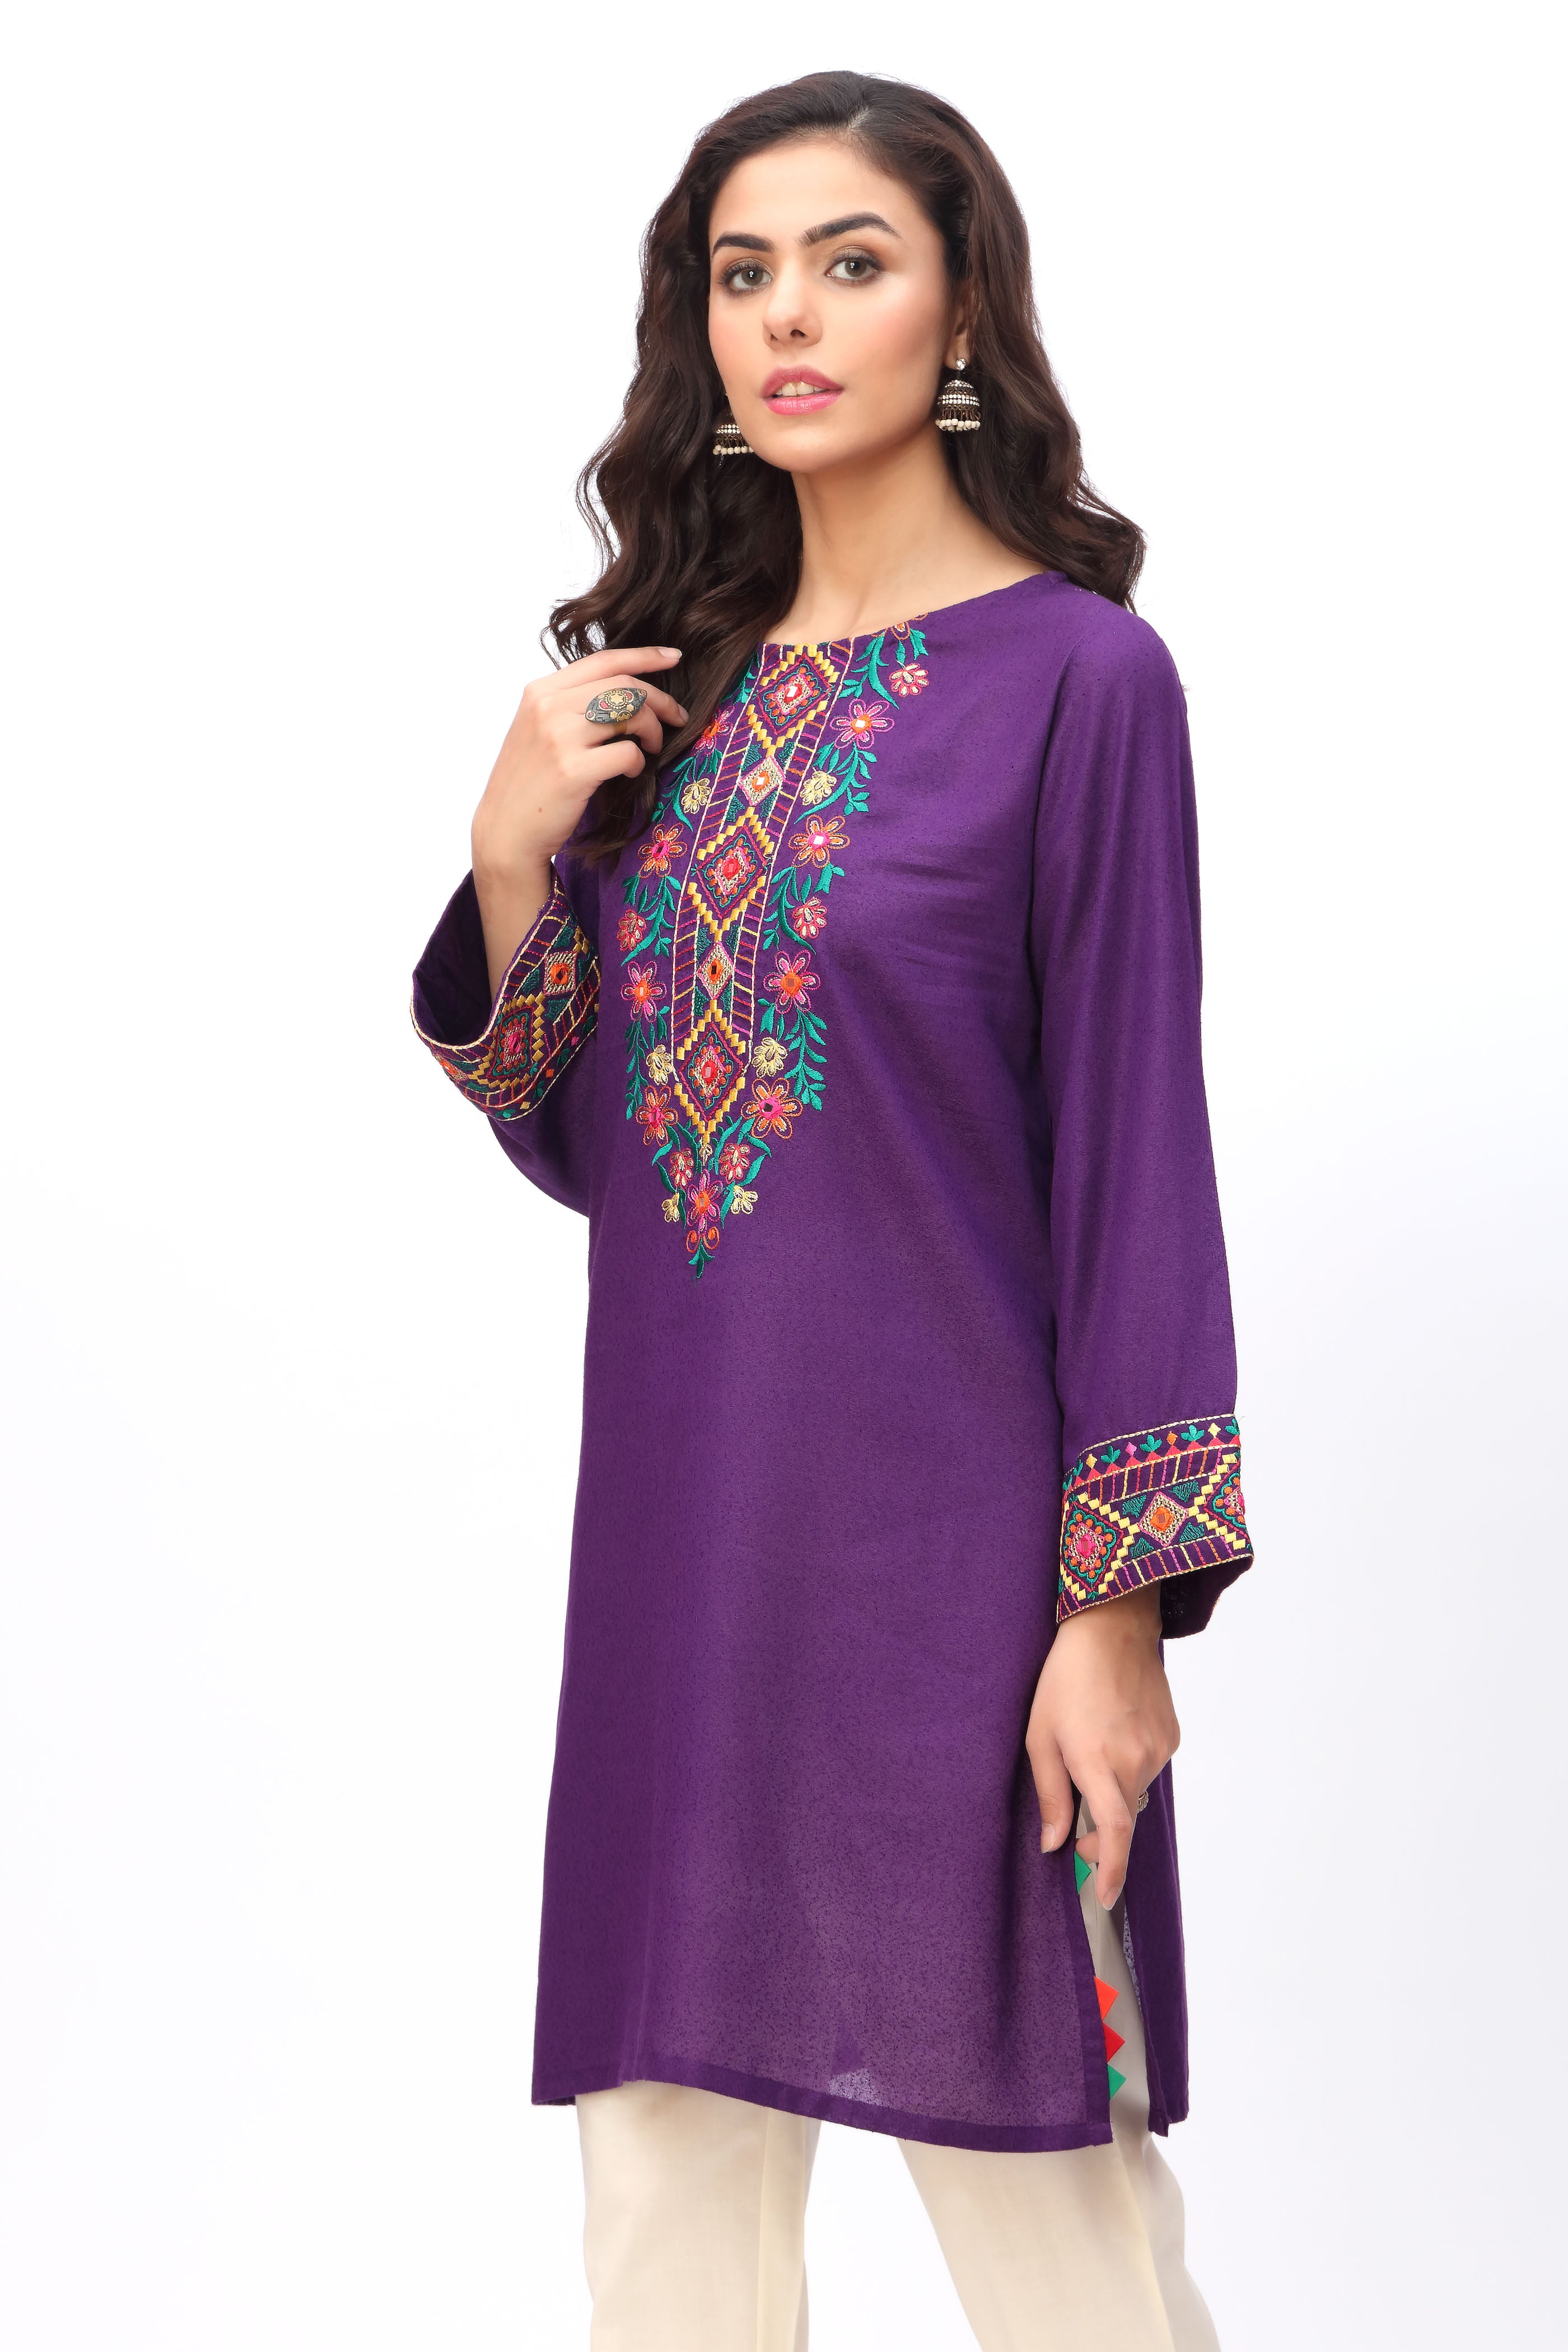 Phool Sheesha 2 in Purple coloured Lawn Karandi fabric 2